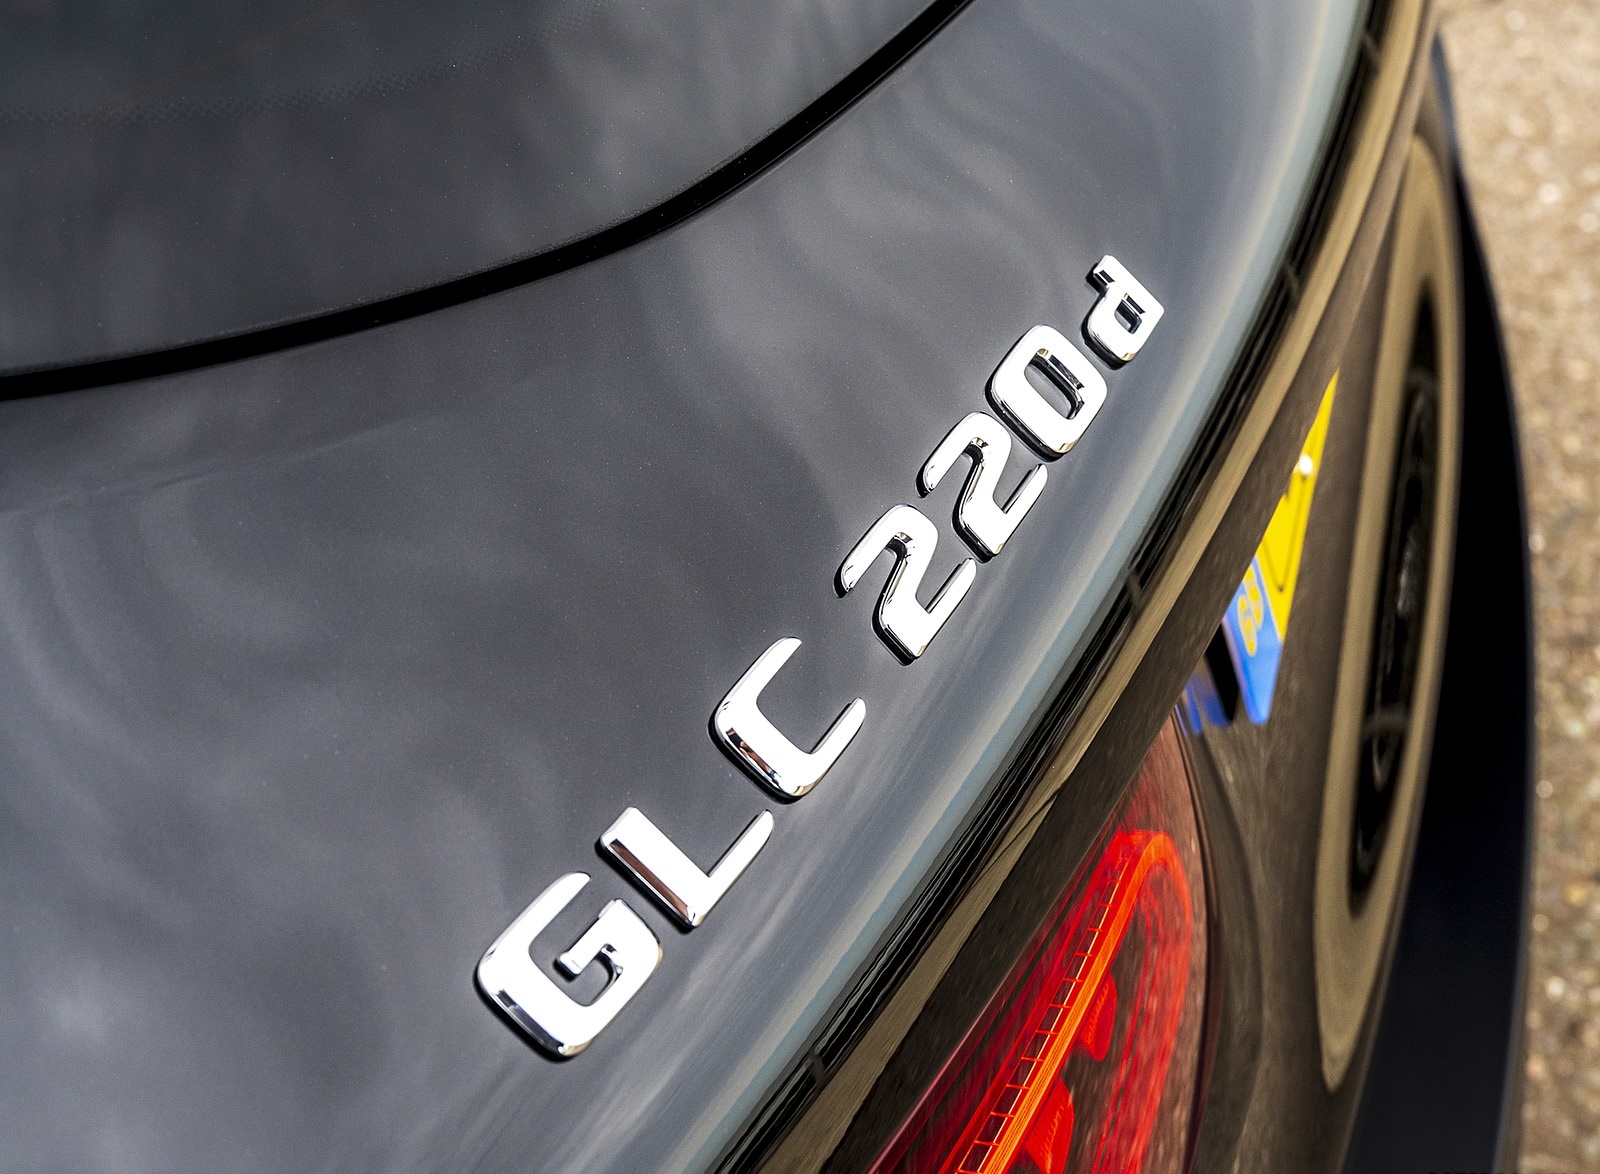 2020 Mercedes-Benz GLC 220d (UK-Spec) Badge Wallpapers #68 of 88